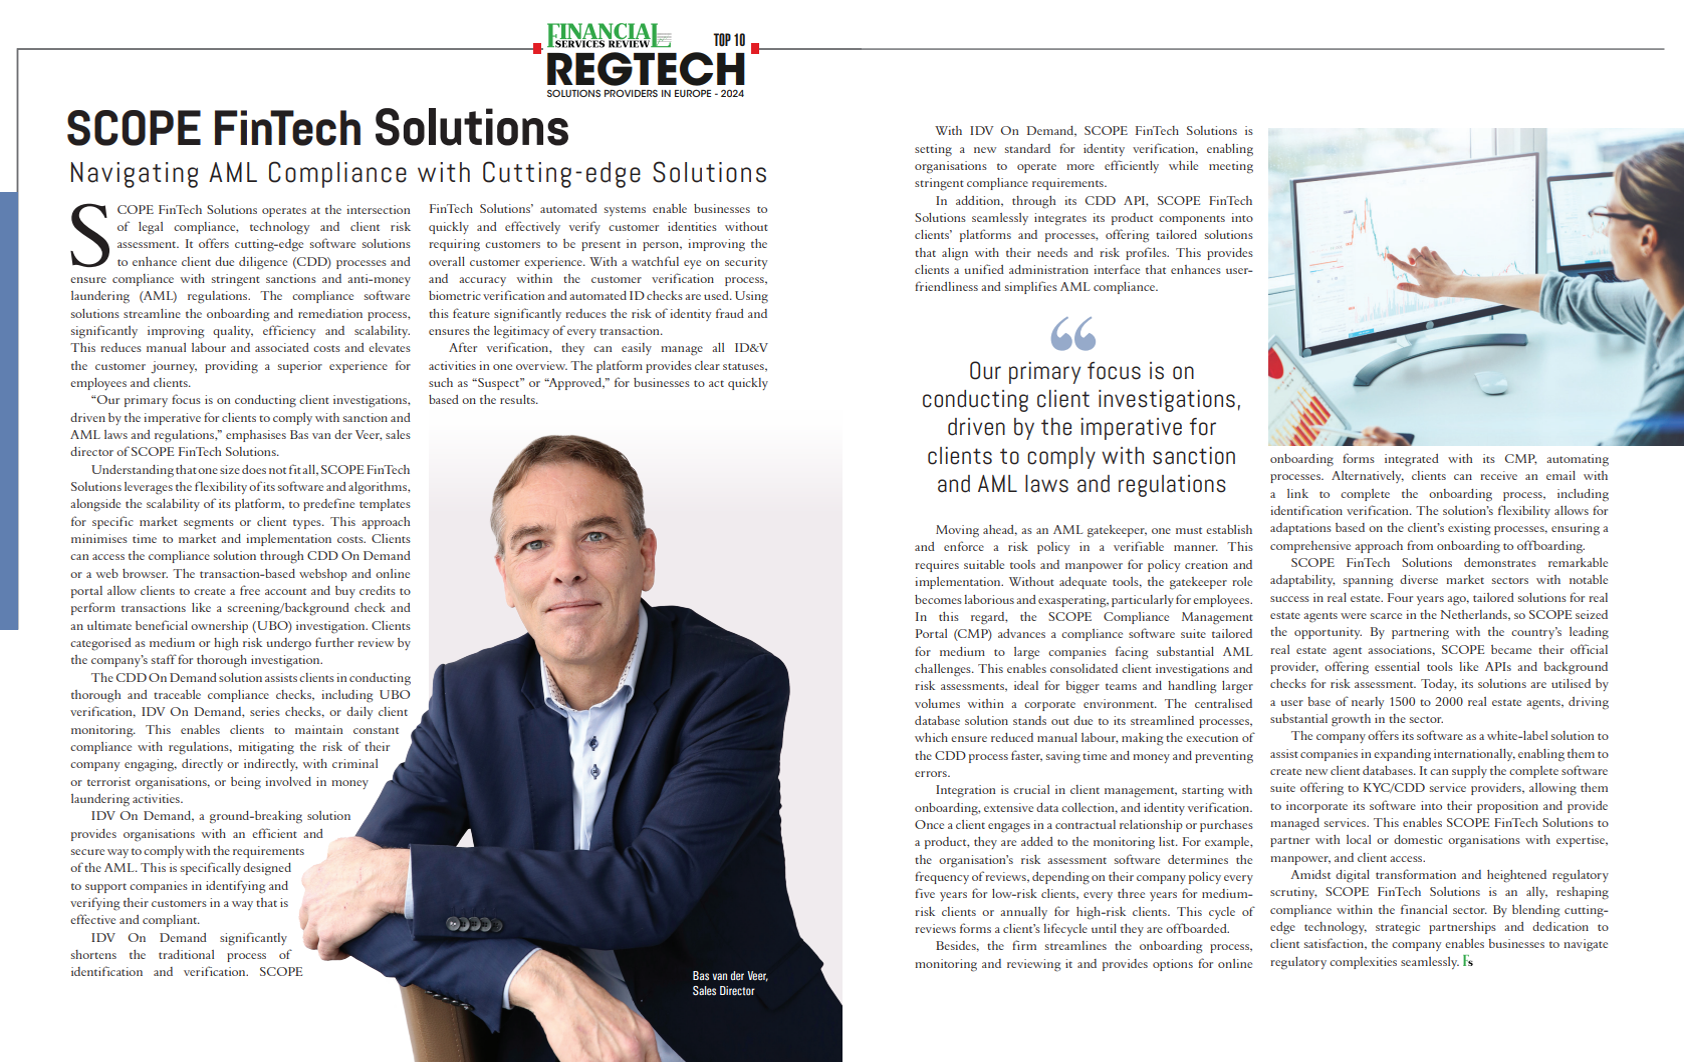 SCOPE FinTech Solutions Reprint Award RegTech